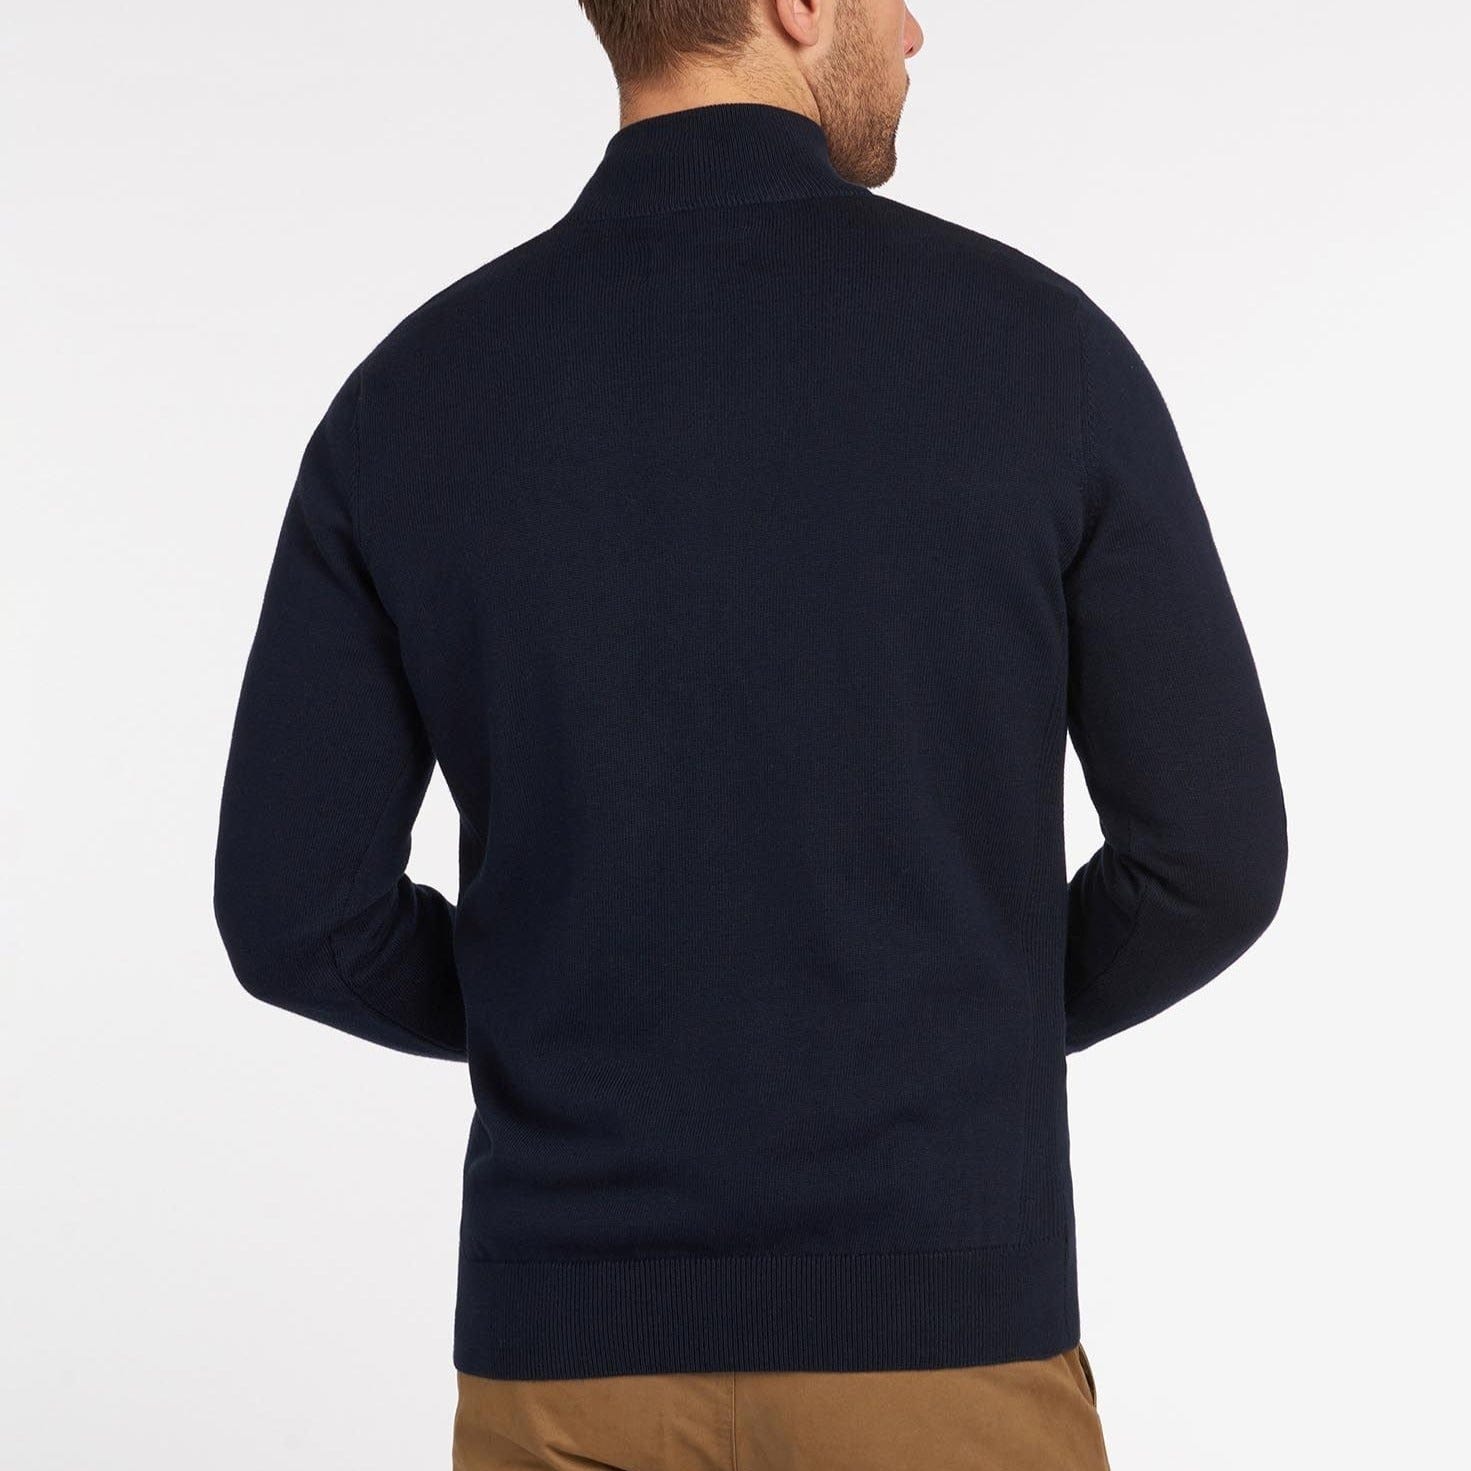 Barbour Cotton Half Zip Sweater in Navy